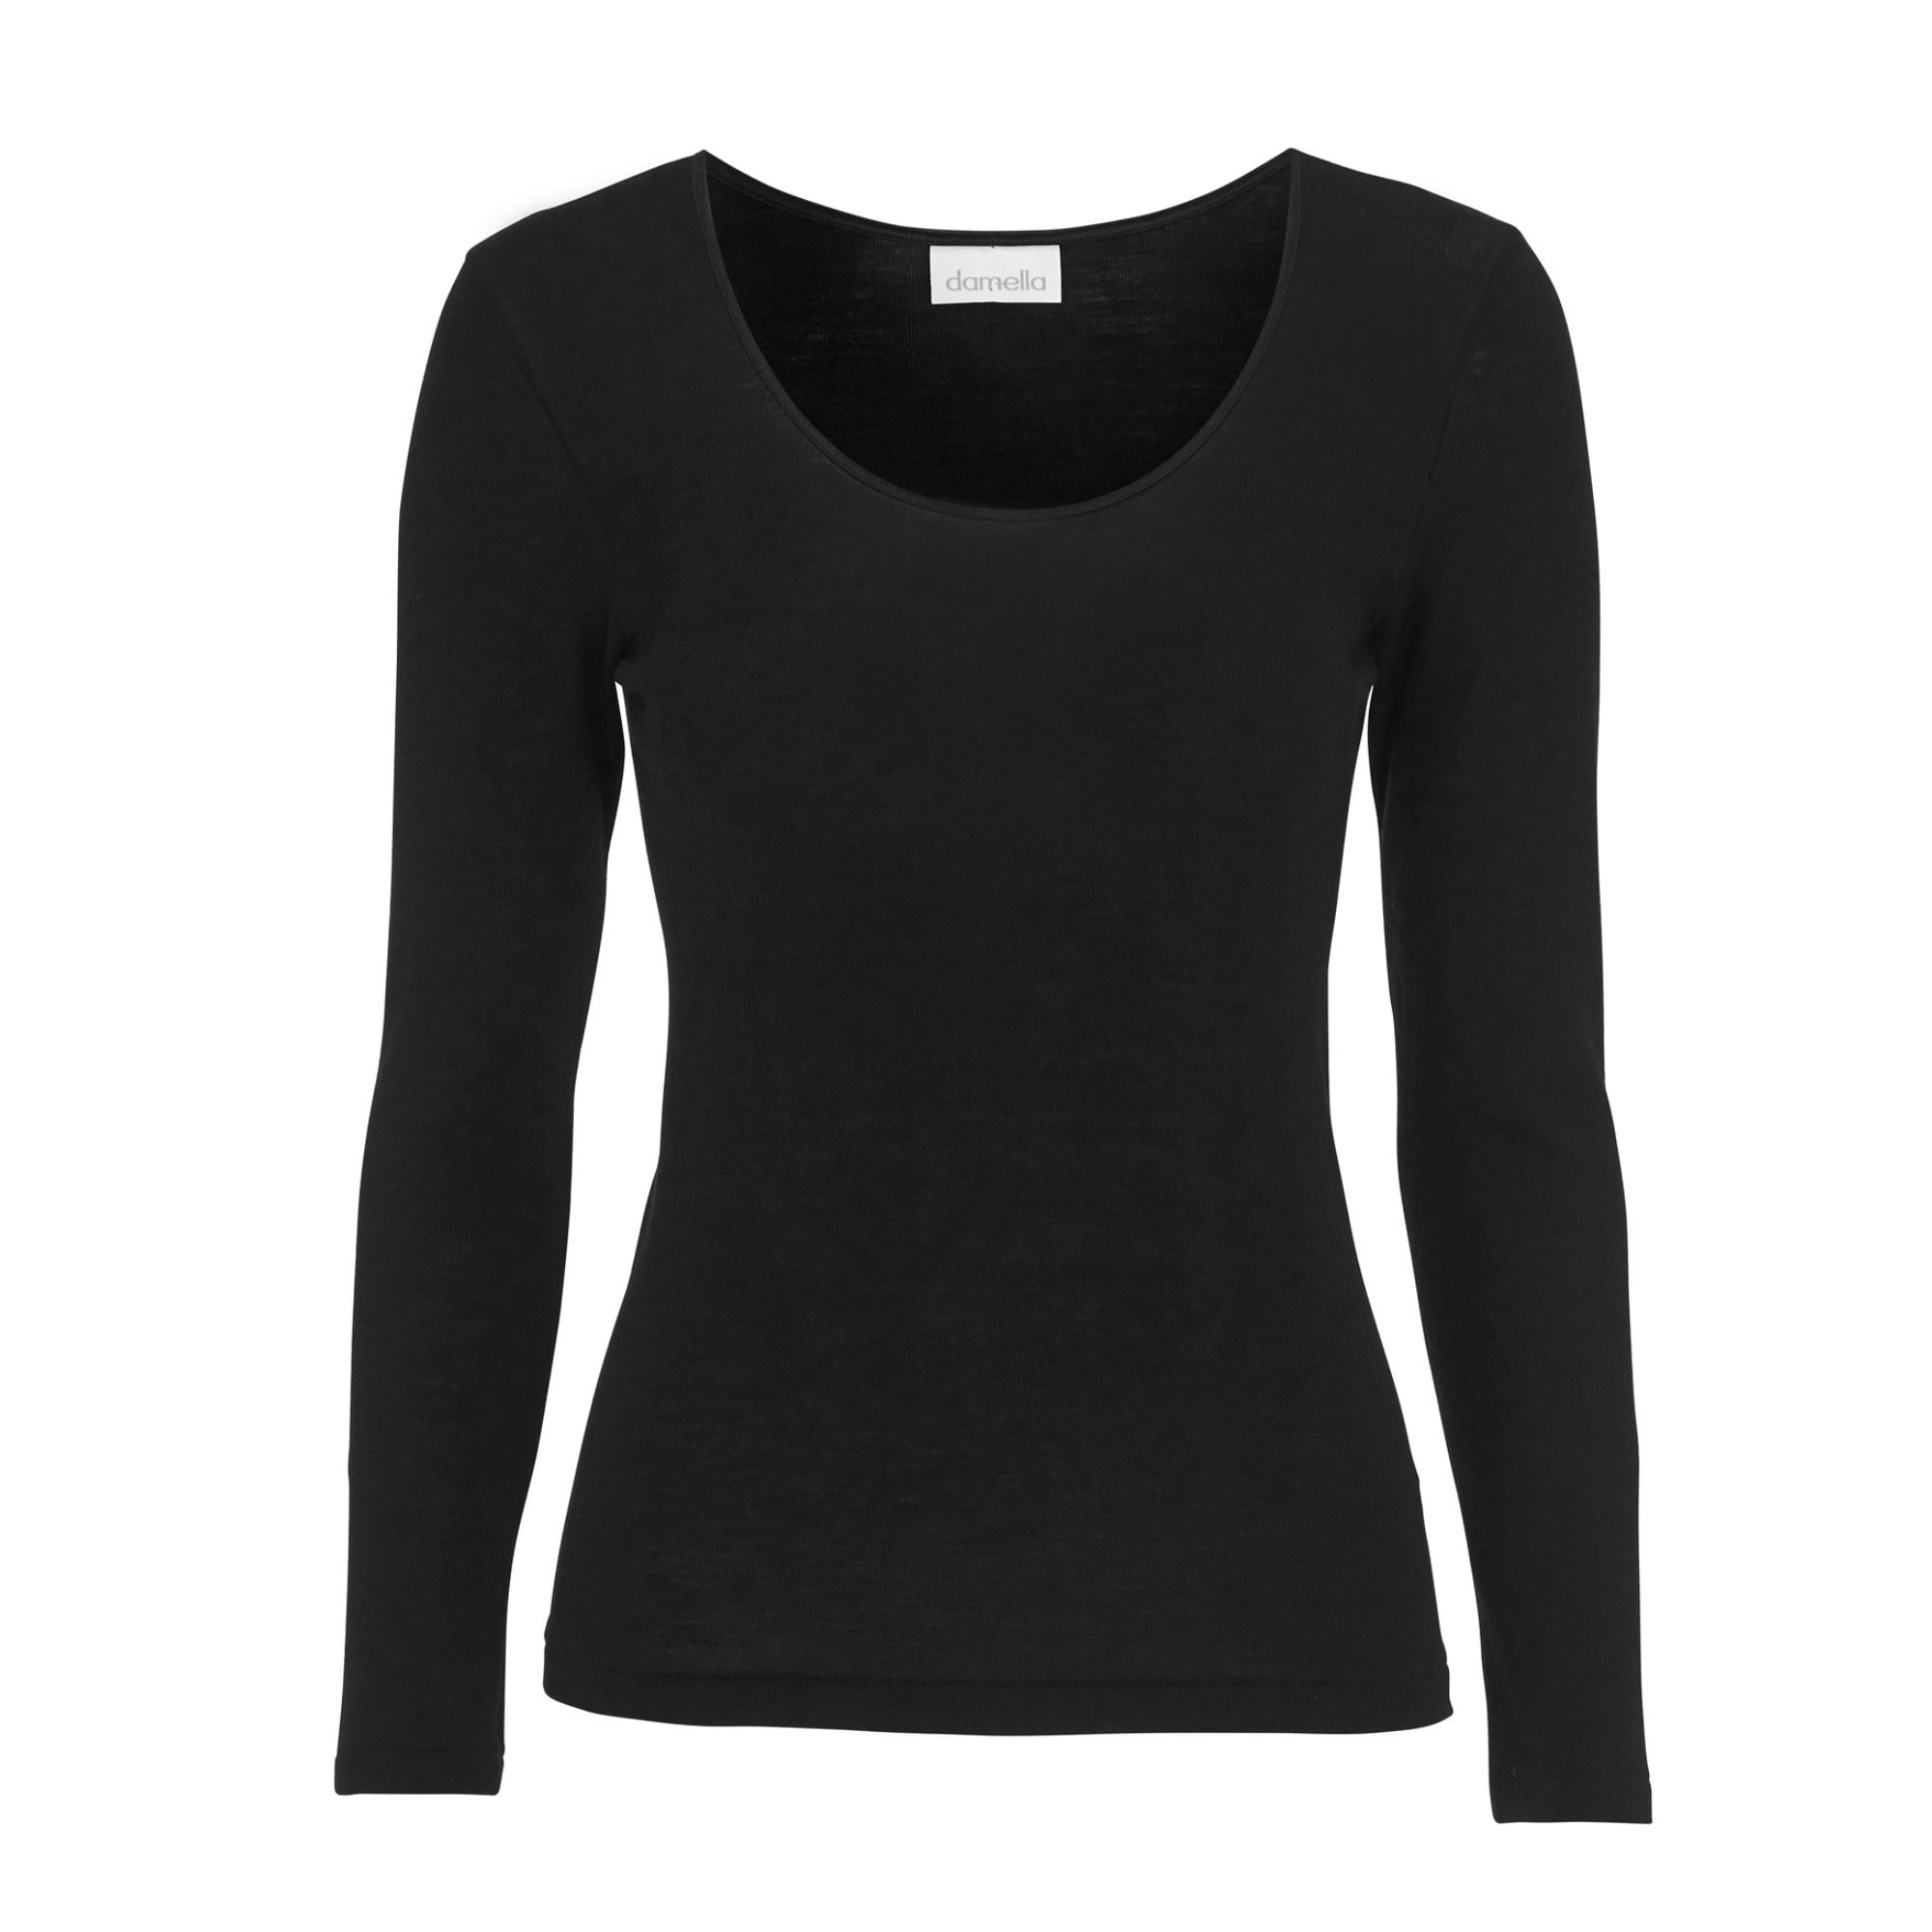 Knitted Wool/Silk Top Long Sleeves Black